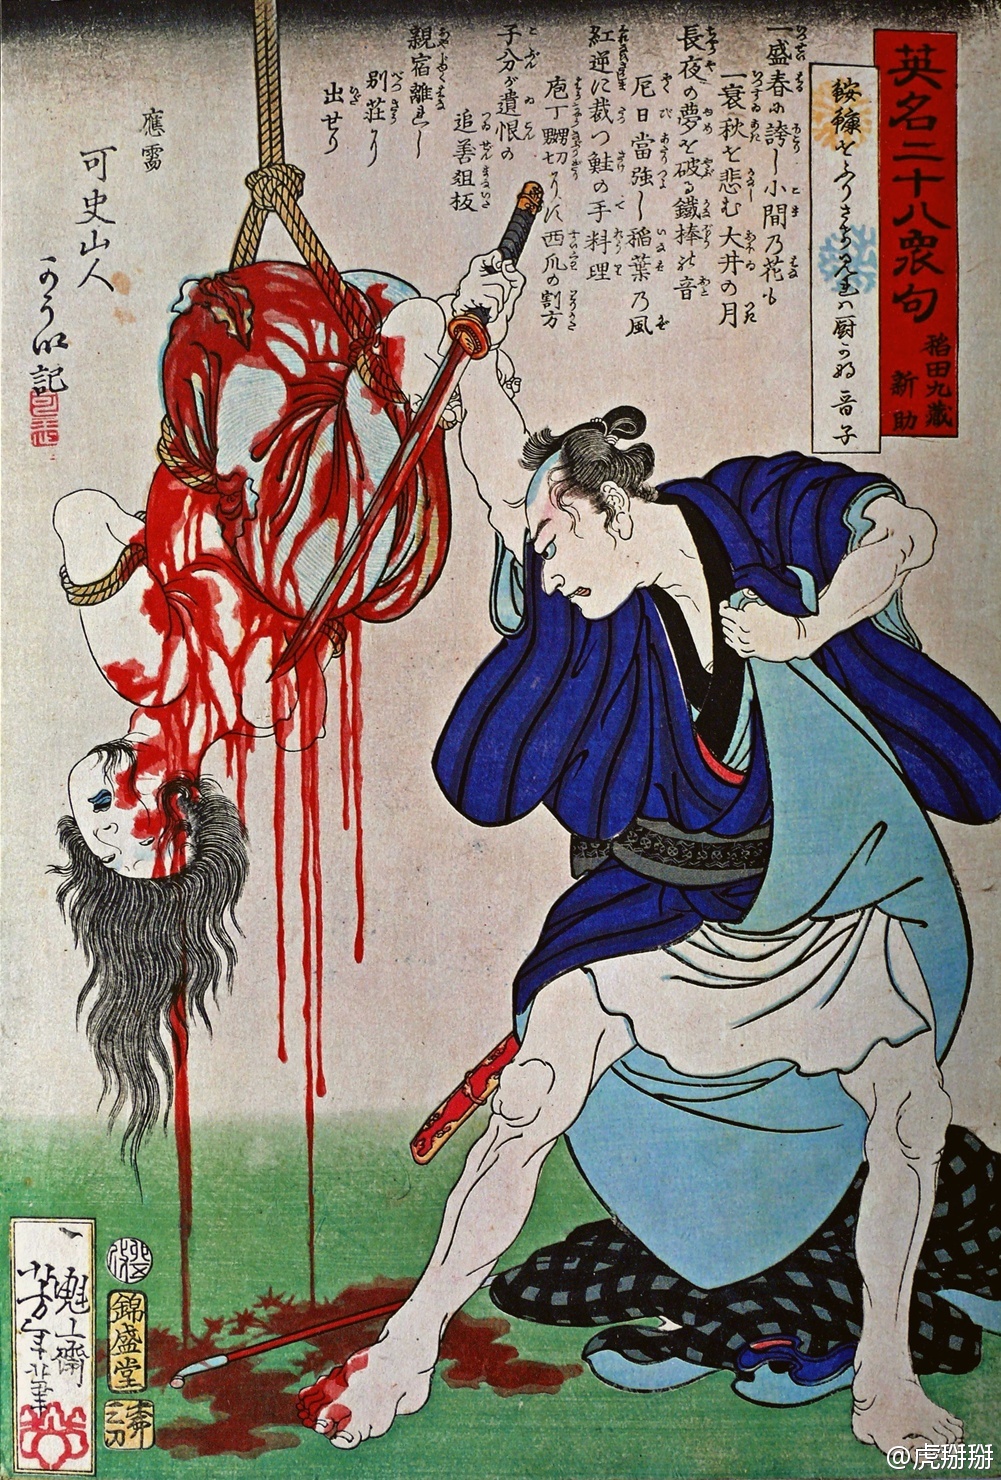 「英名二十八衆句　稲田九蔵新助」。月岡芳年， 慶応３年（1867年）。